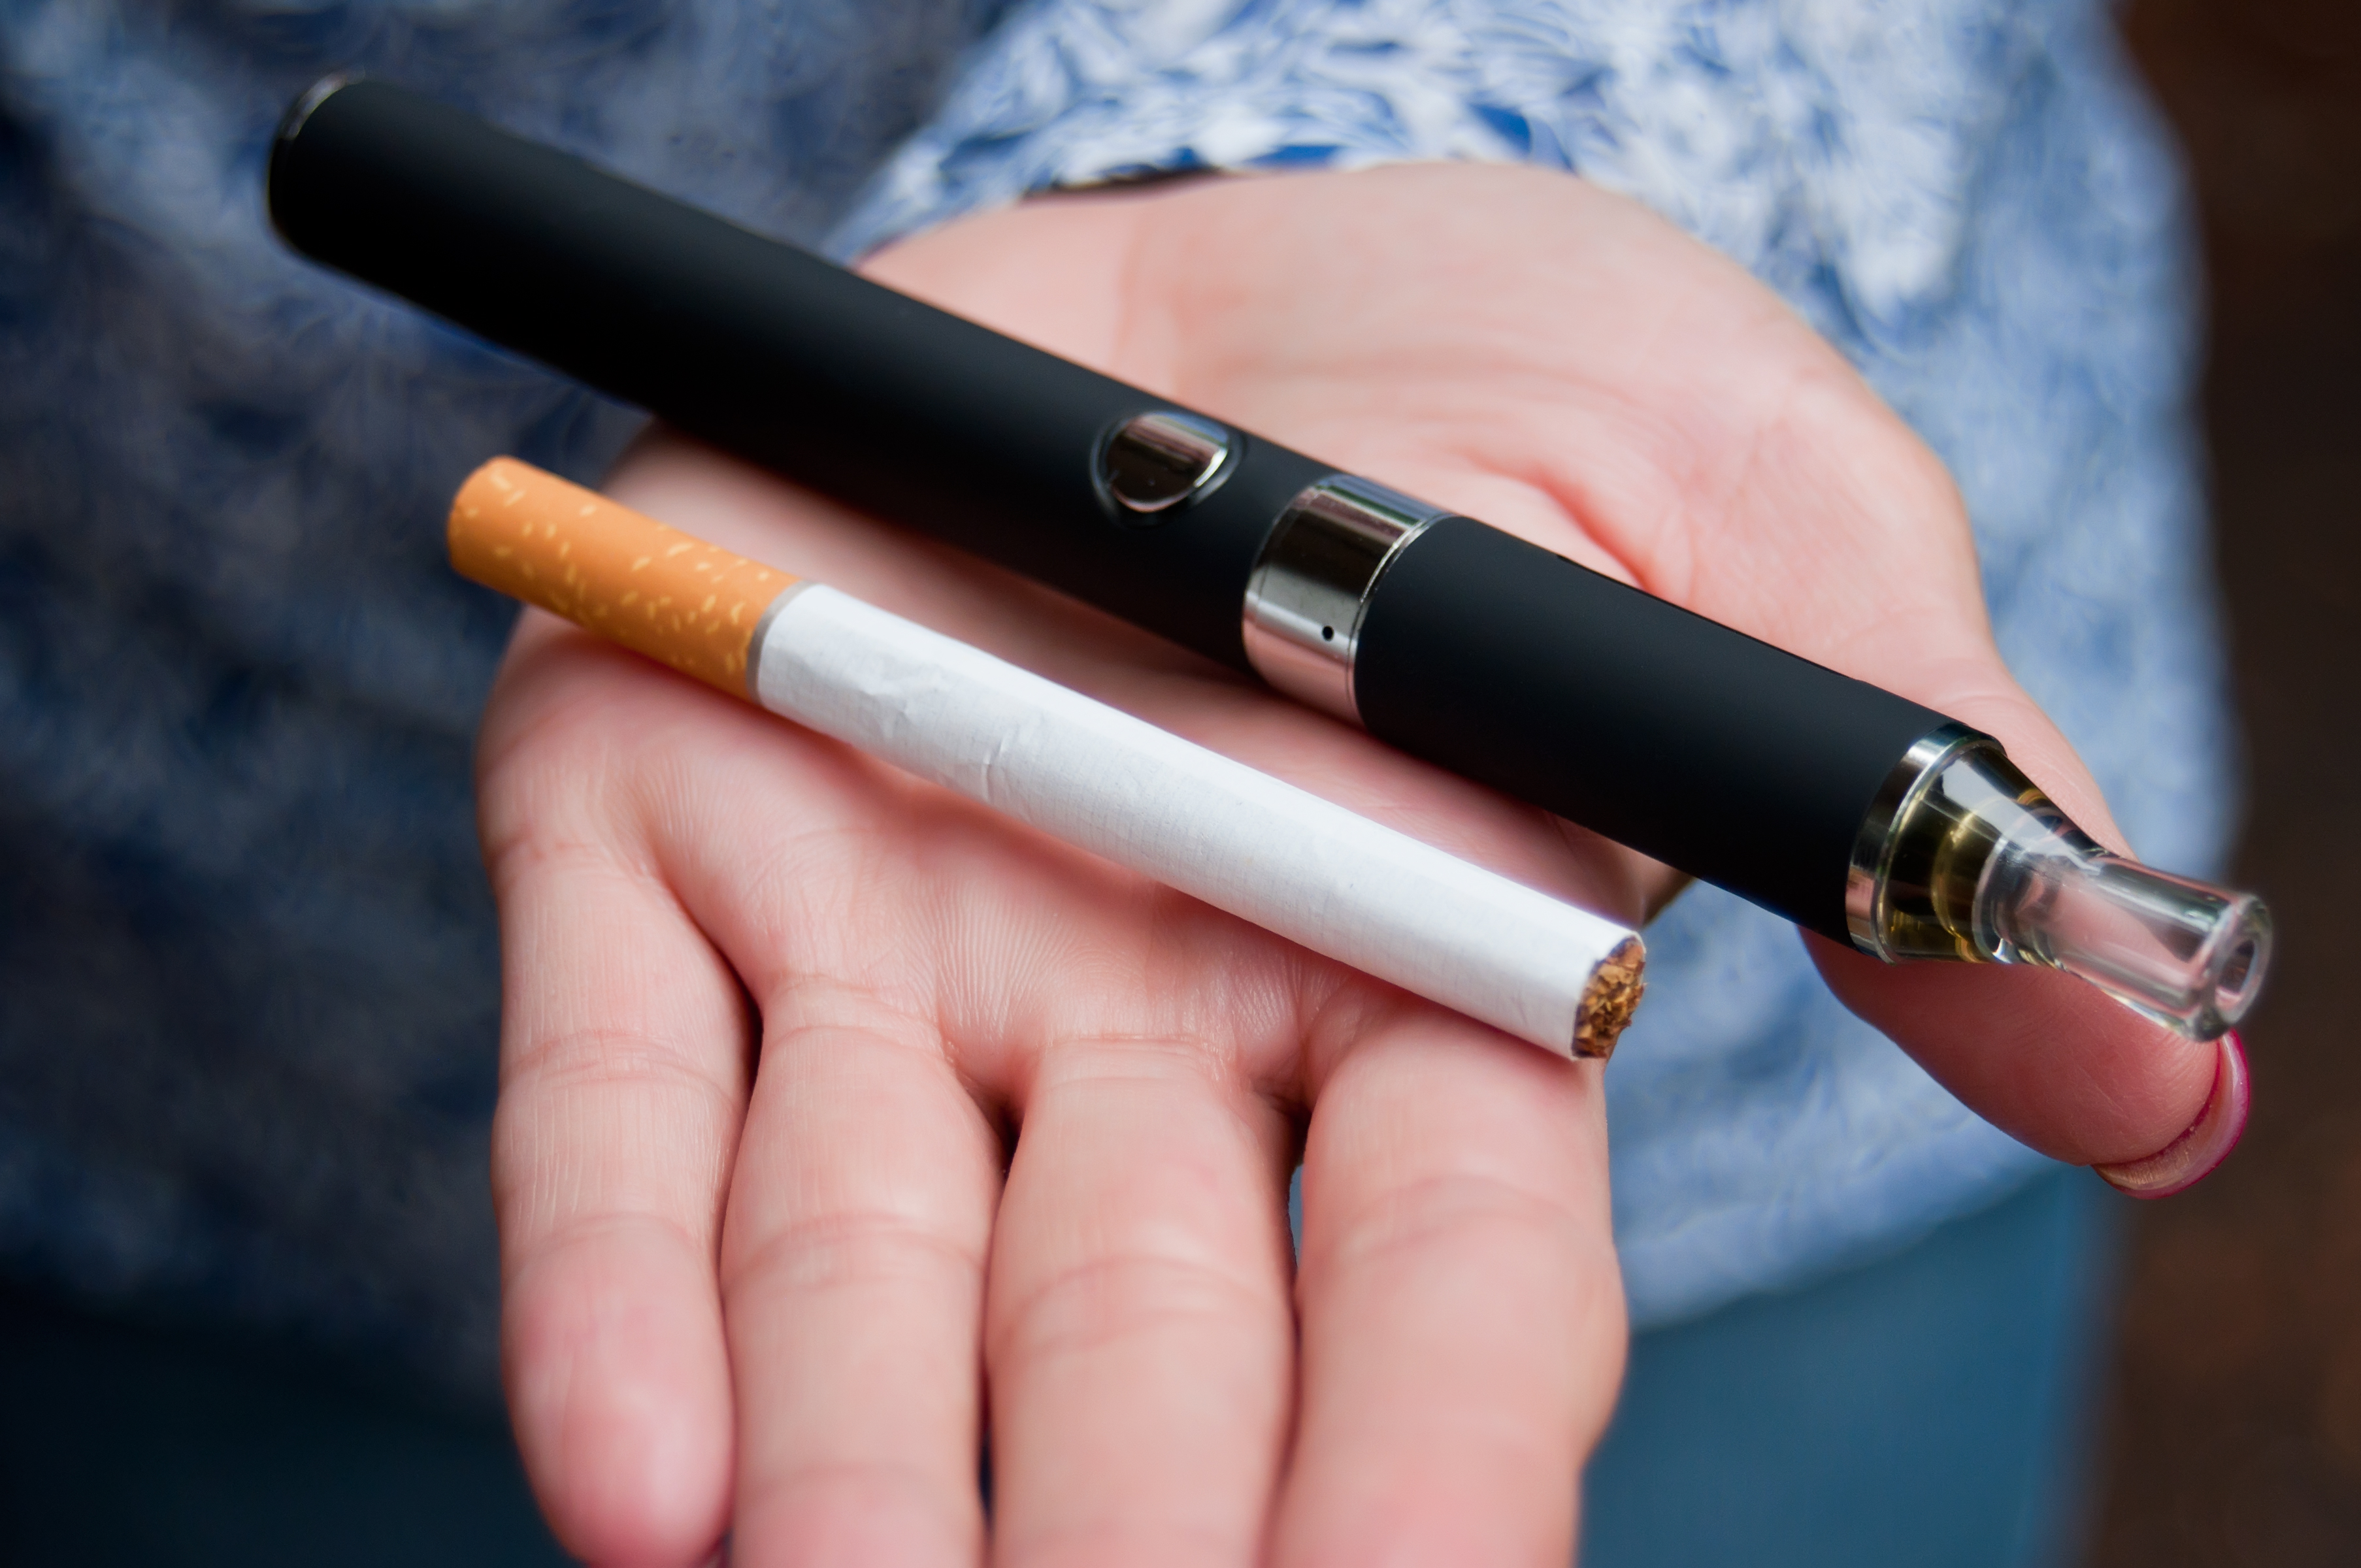 Wielka Brytania i Kanada rekomendują e-papierosy. To zdrowsza alternatywa -  Facet